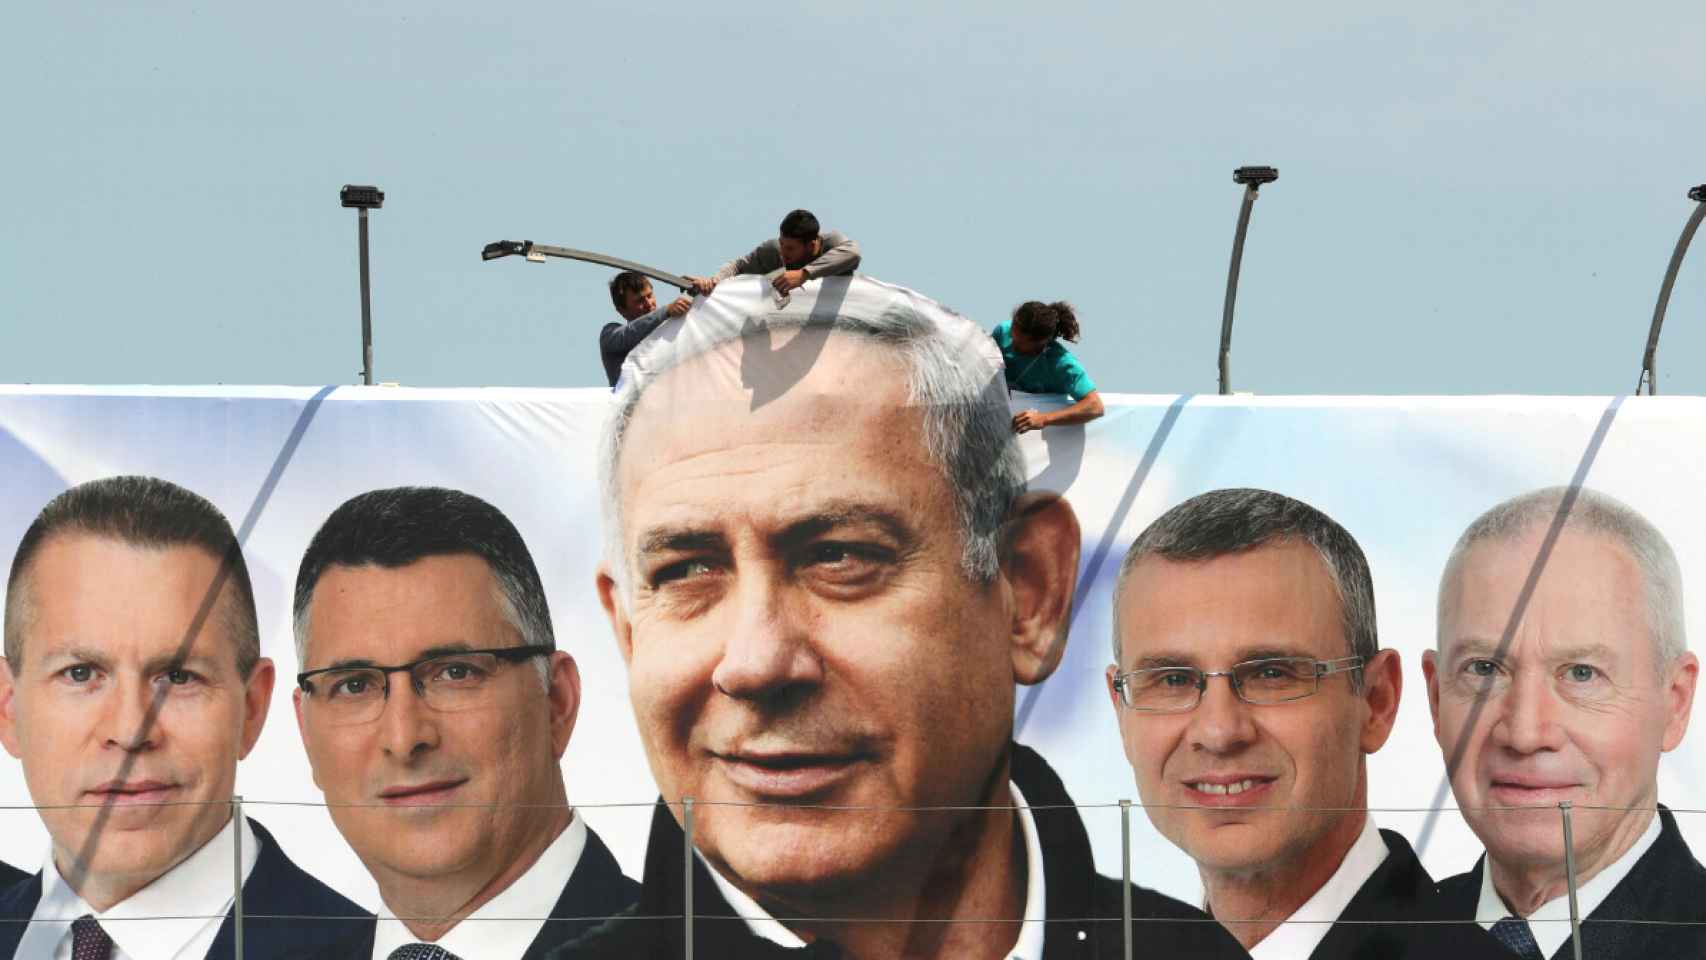 Trabajadores colgando una pancarta de campaña electoral del Likud con Netanyahu en el centro.